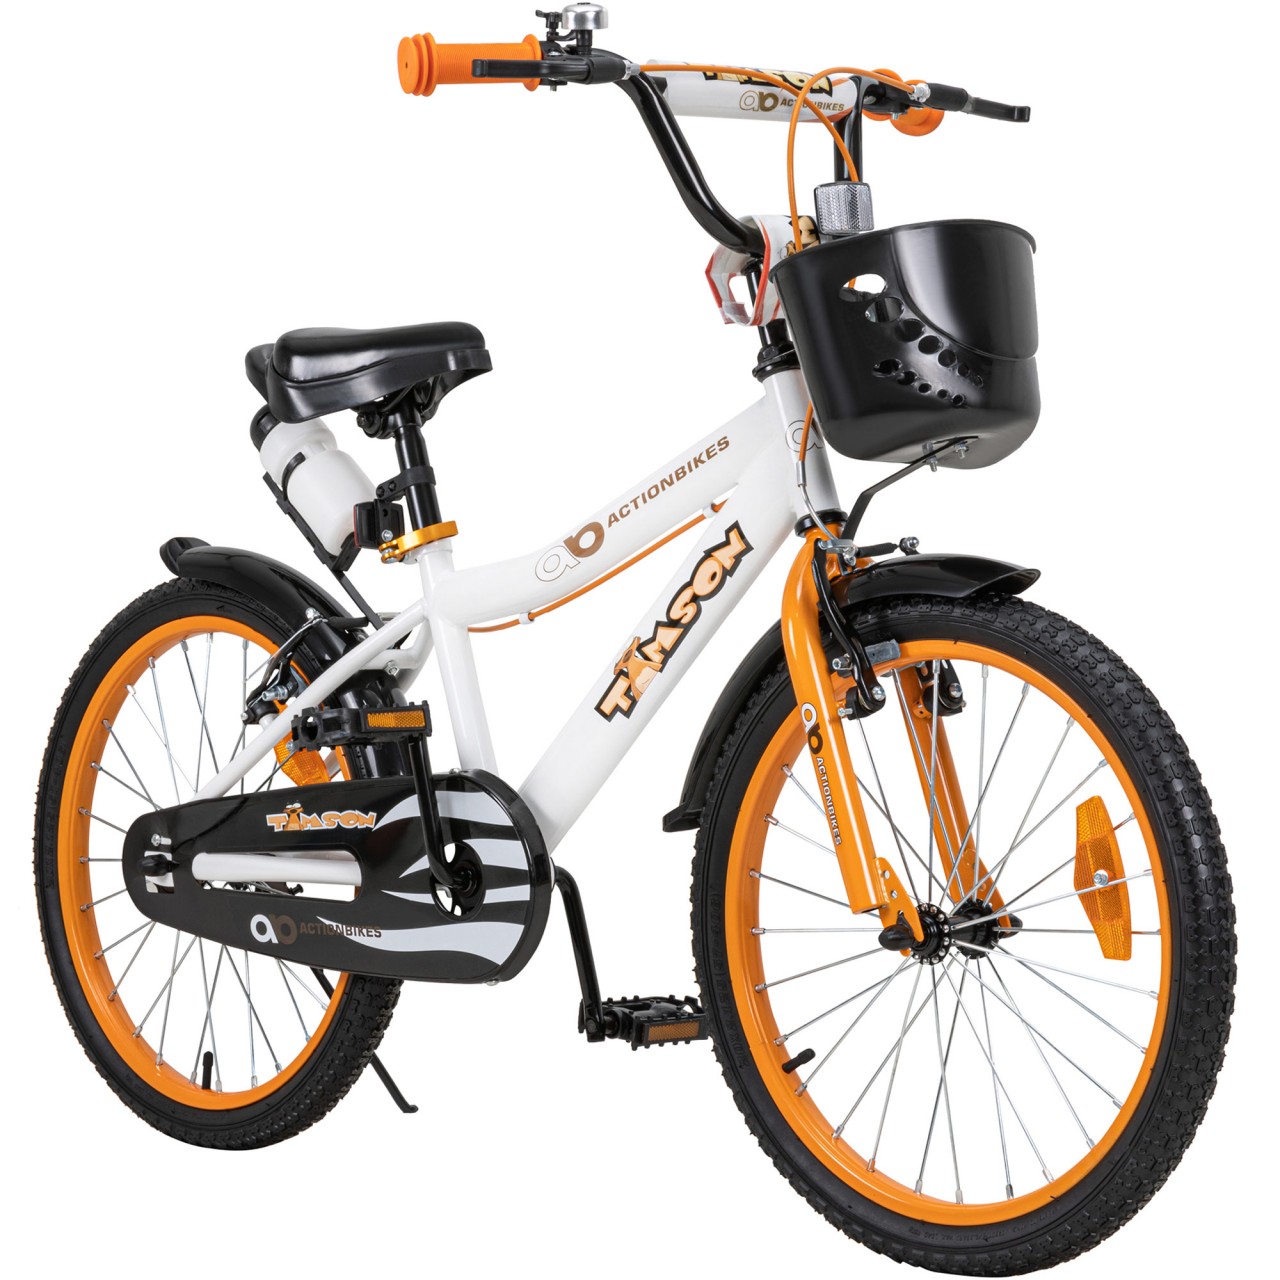 01-kinderfahrrad-20-zoll-orange-actionbikes-motors-timson-startbild